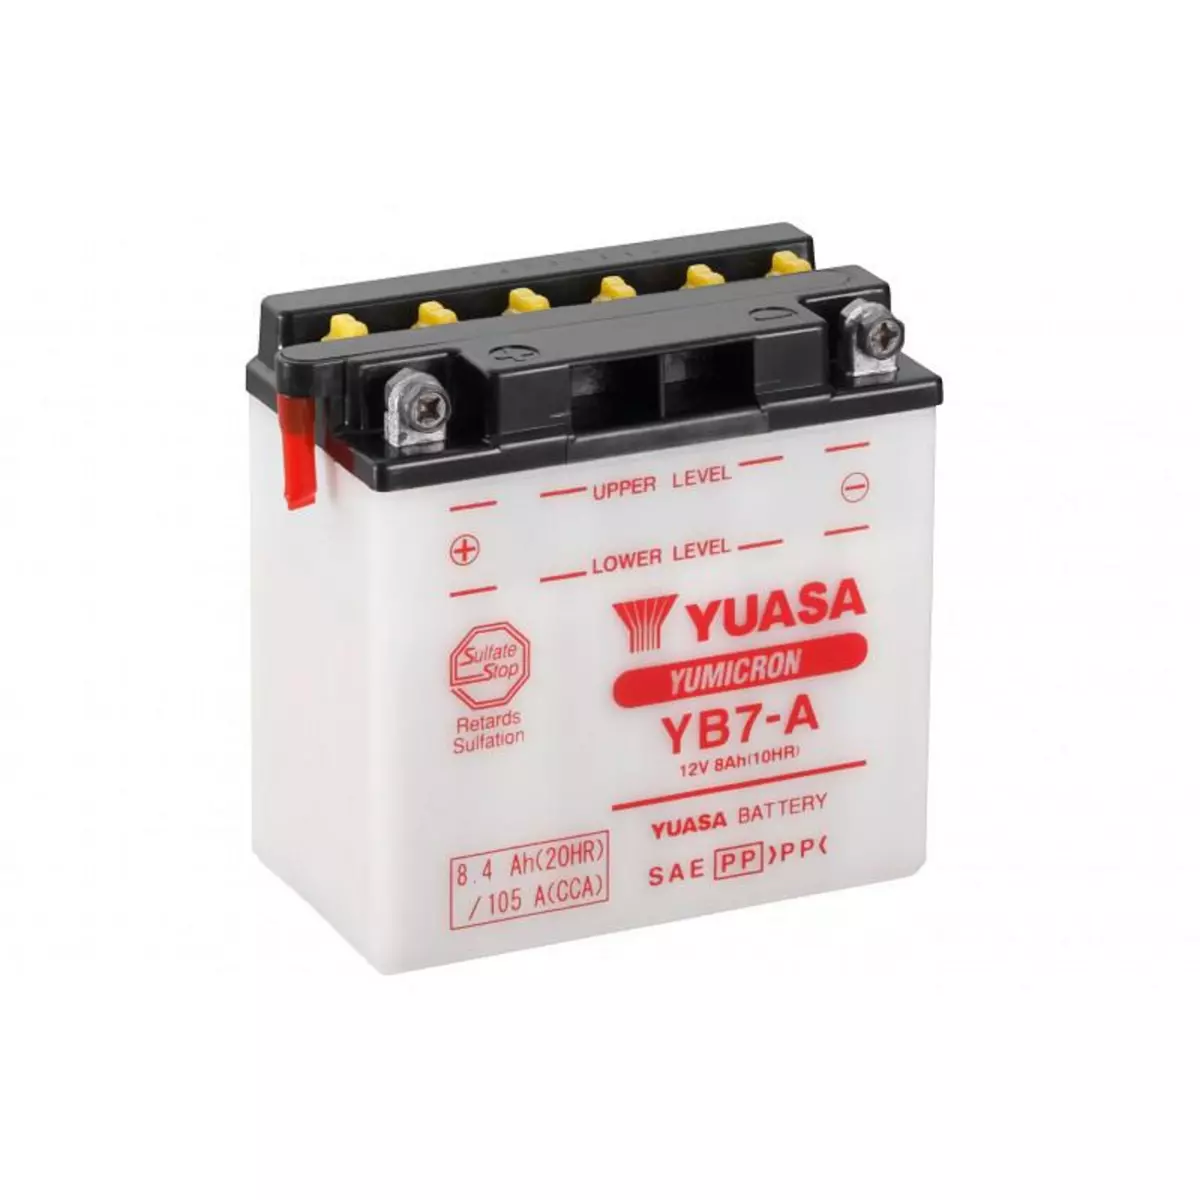 YUASA Batterie moto YUASA YB7-A 12V 8.4ah 105A